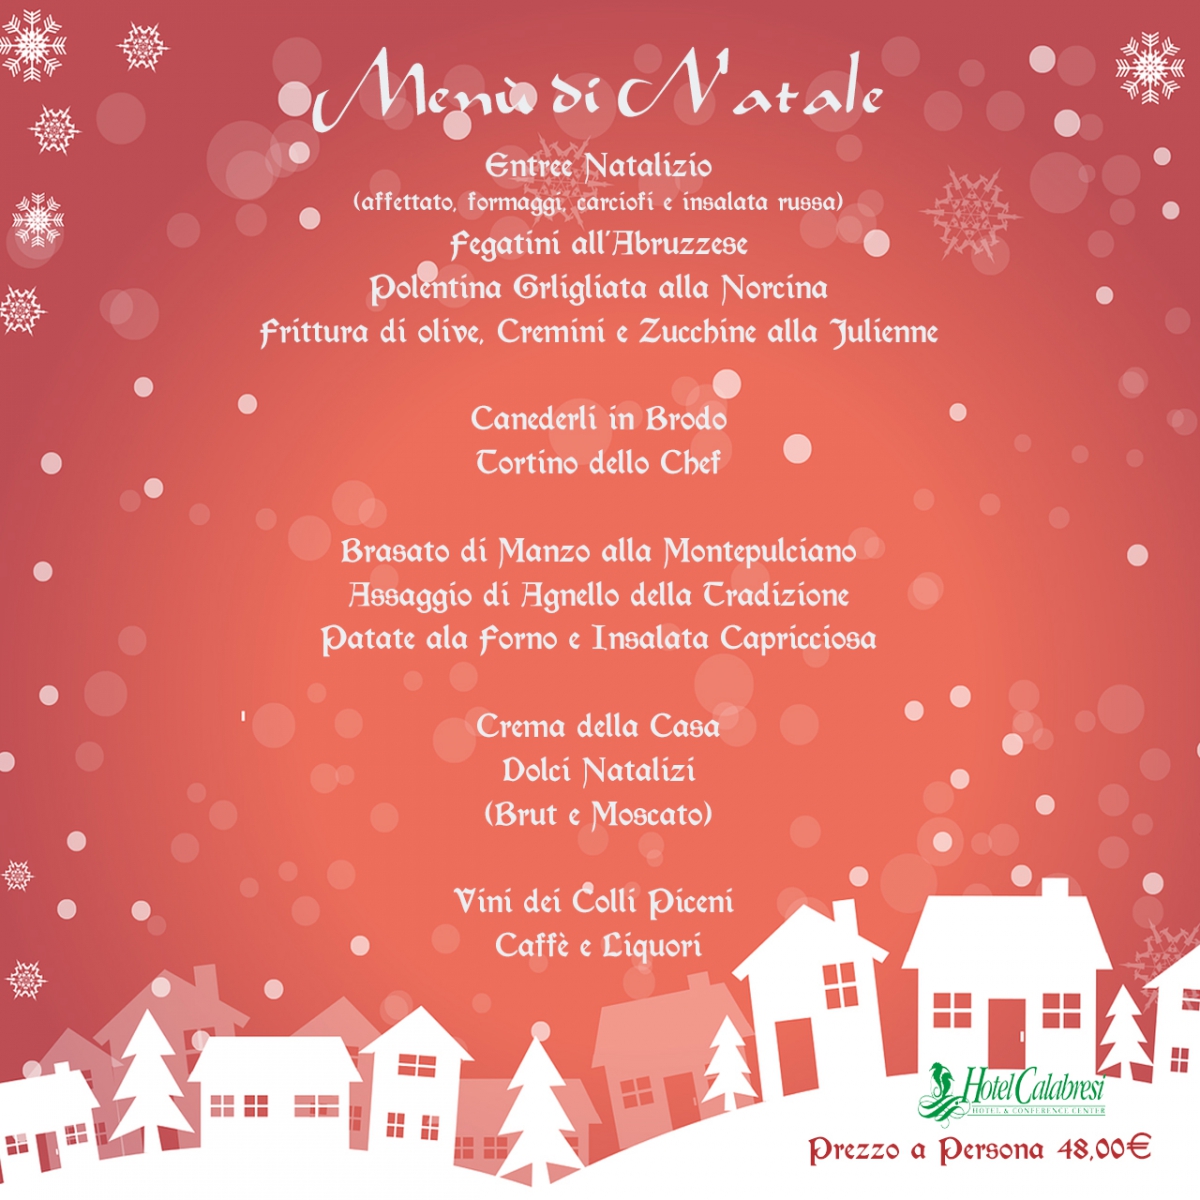 Menu Natale.Menu Di Natale 2017 Hotel Calabresi Pranzo Di Natale Hotel Calabresi San Benedetto Del Tronto